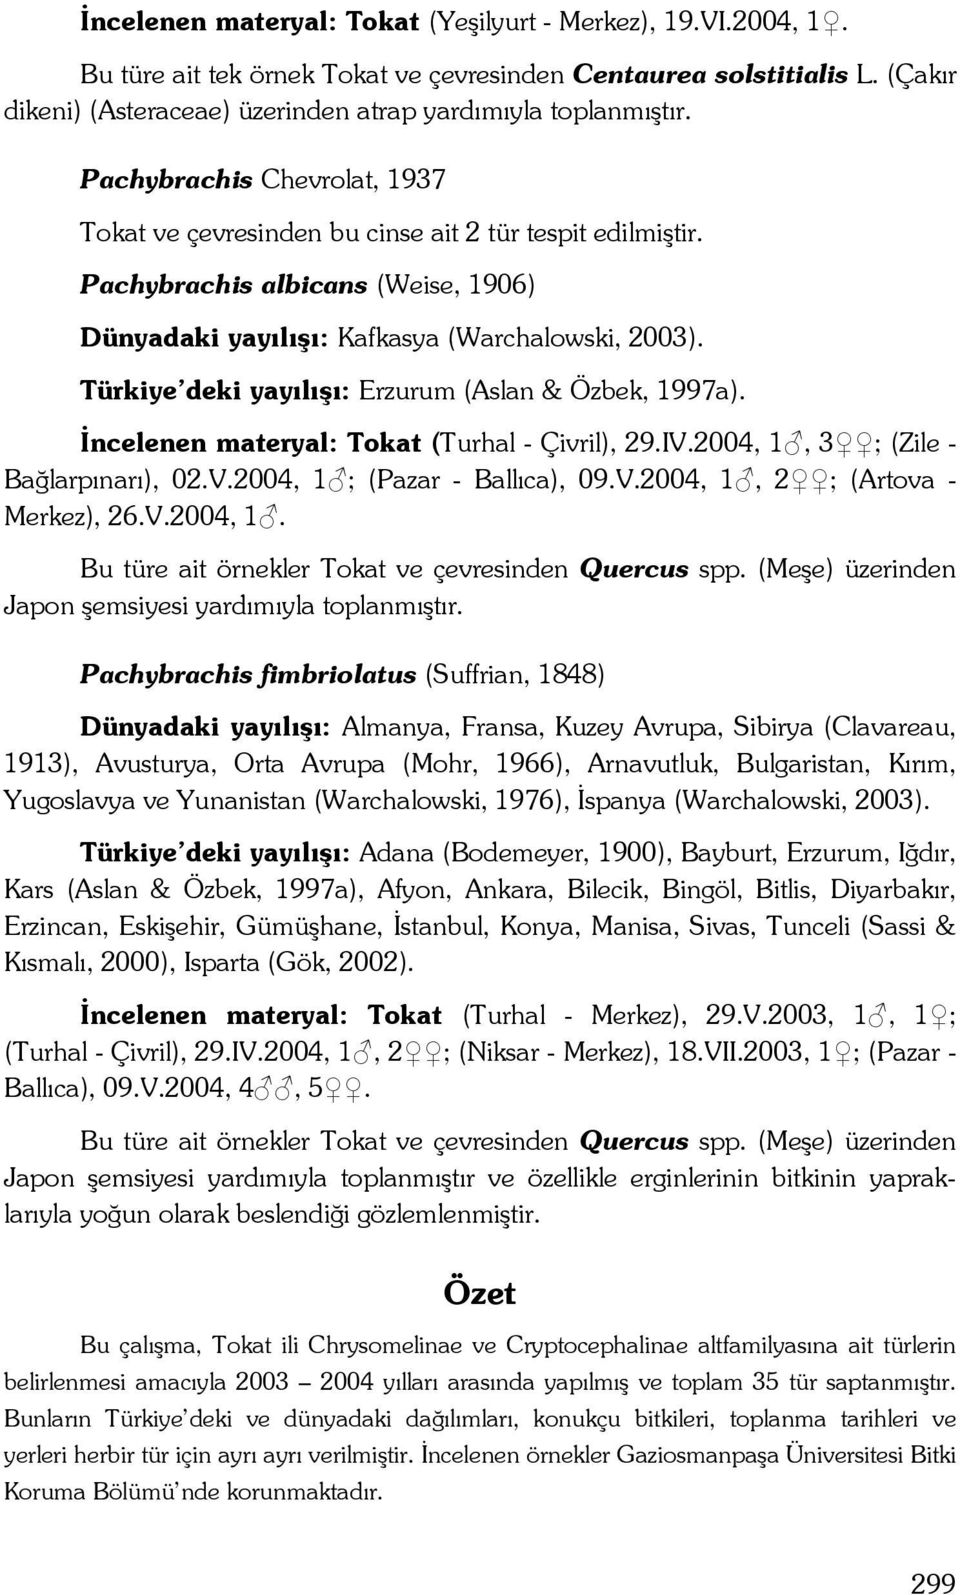 Türkiye deki yayılışı: Erzurum (Aslan & Özbek, 1997a). İncelenen materyal: Tokat (Turhal - Çivril), 29.IV.2004, 1, 3 ; (Zile - Bağlarpınarı), 02.V.2004, 1 ; (Pazar - Ballıca), 09.V.2004, 1, 2 ; (Artova - Merkez), 26.